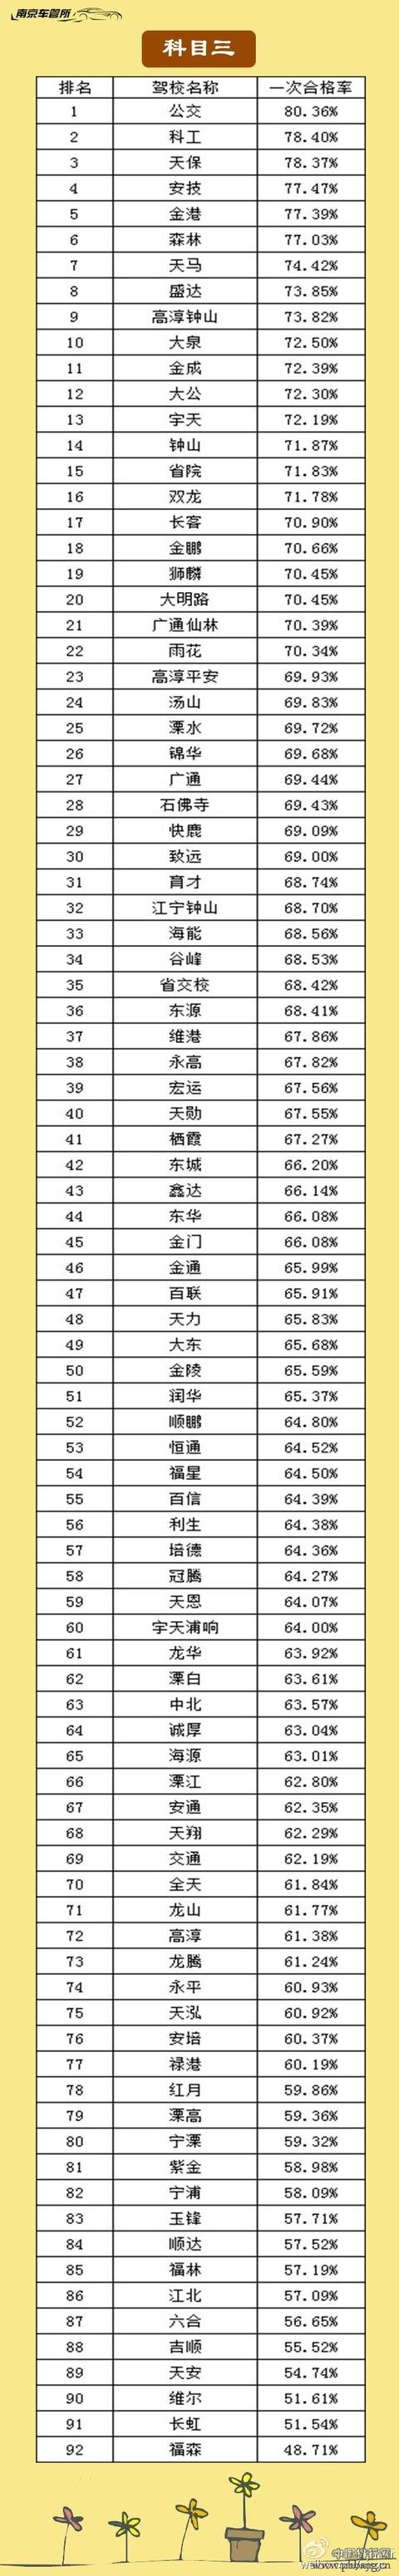 2015年南京驾校培训质量排名